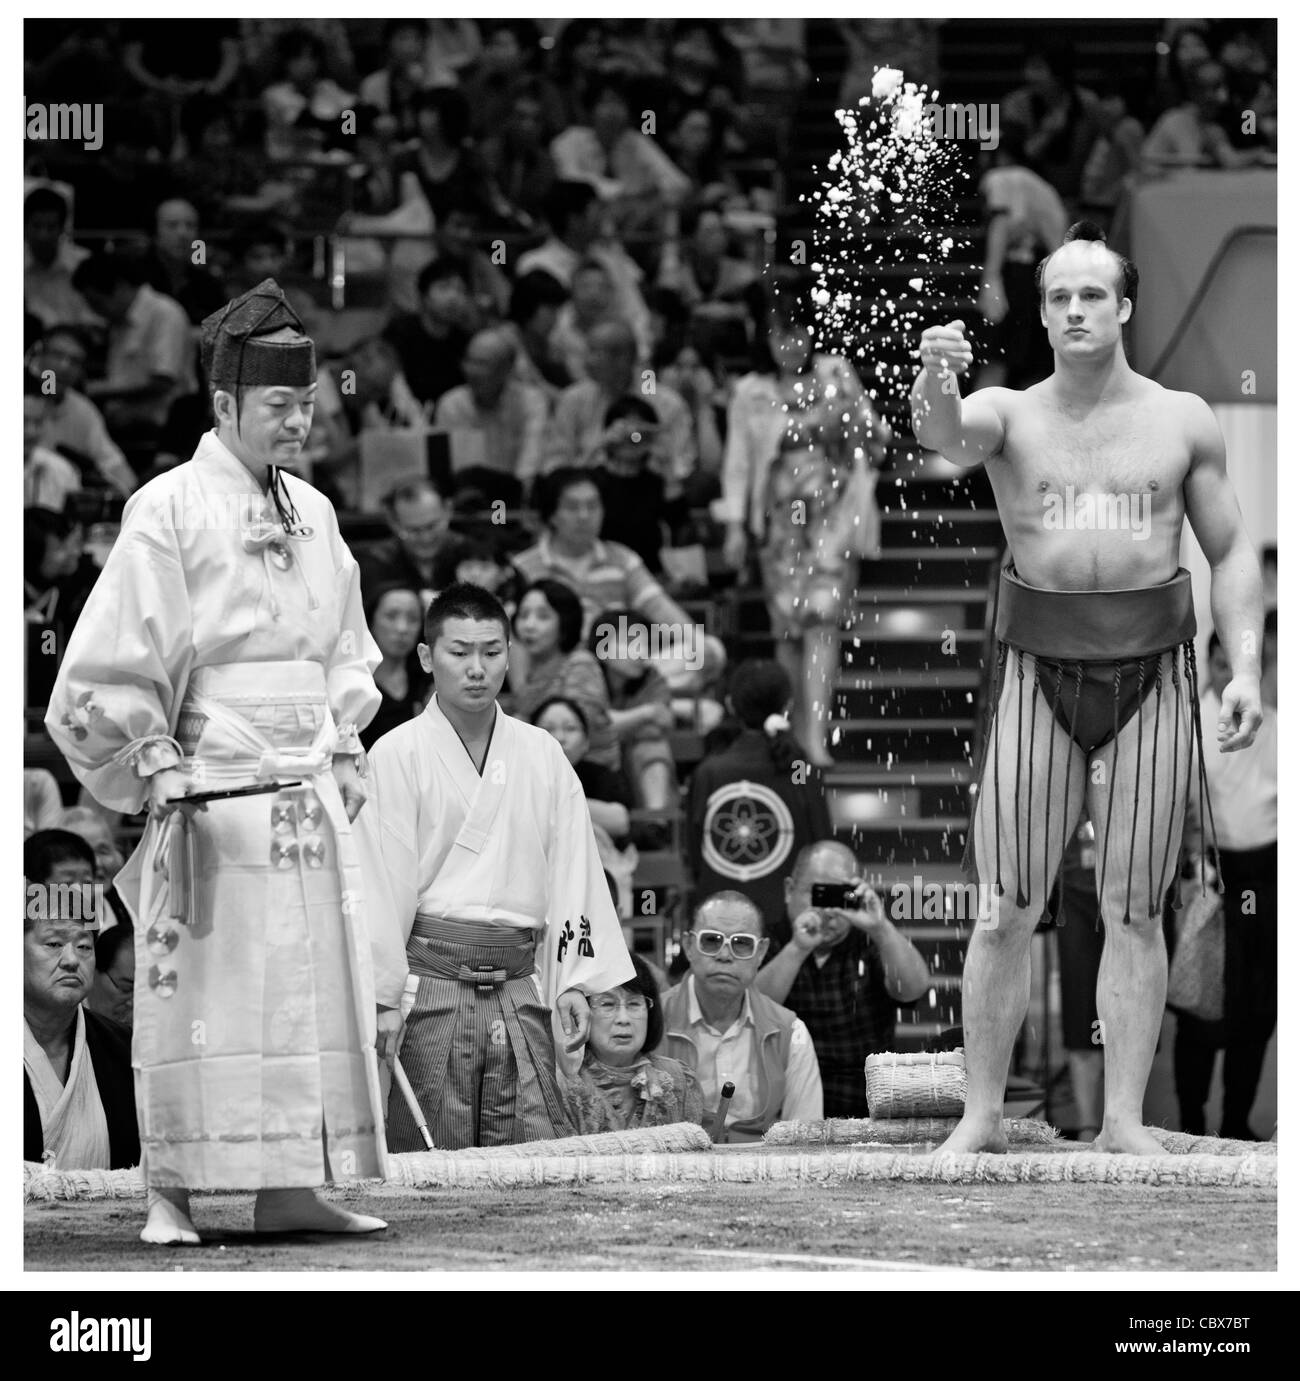 République tchèque lutteur de sumo takanoyama jeter du sel pour purifier l'anneau (dohyo) - Ryogoku Kokugikan, Tokyo, Japon Banque D'Images